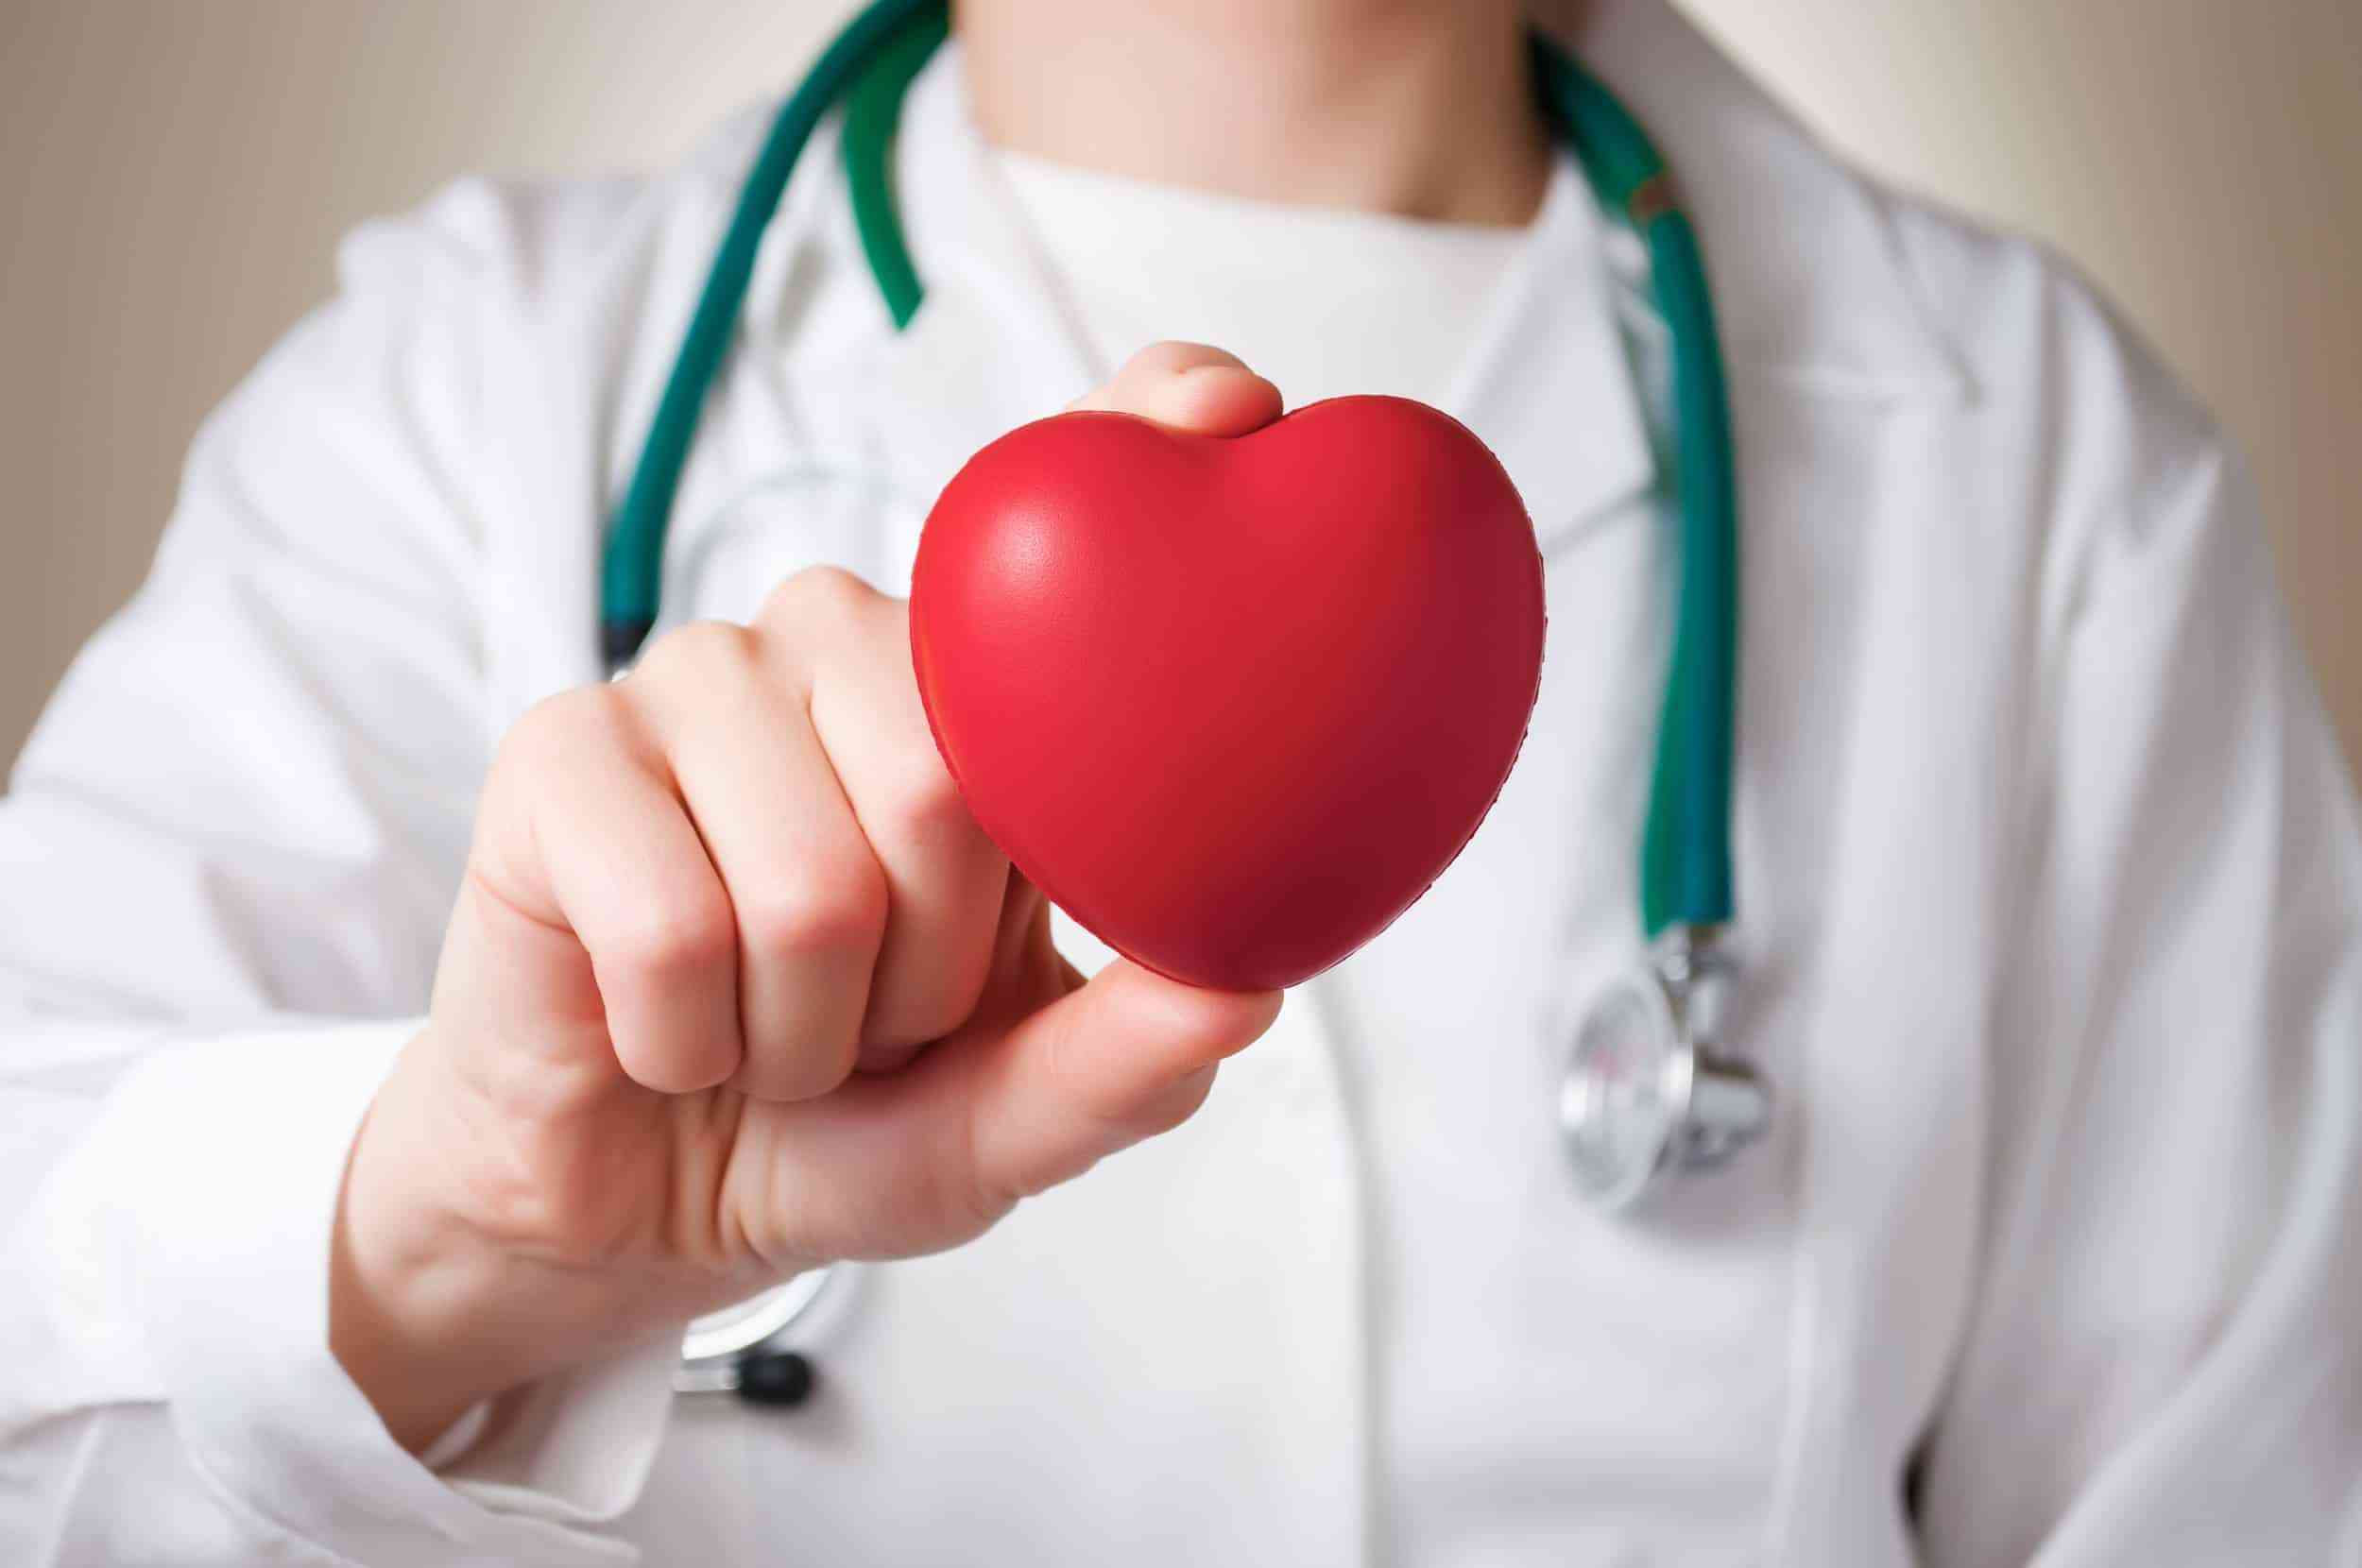 الموافقة على إنشاء قاعدة بيانات لجمعية أطباء القلب